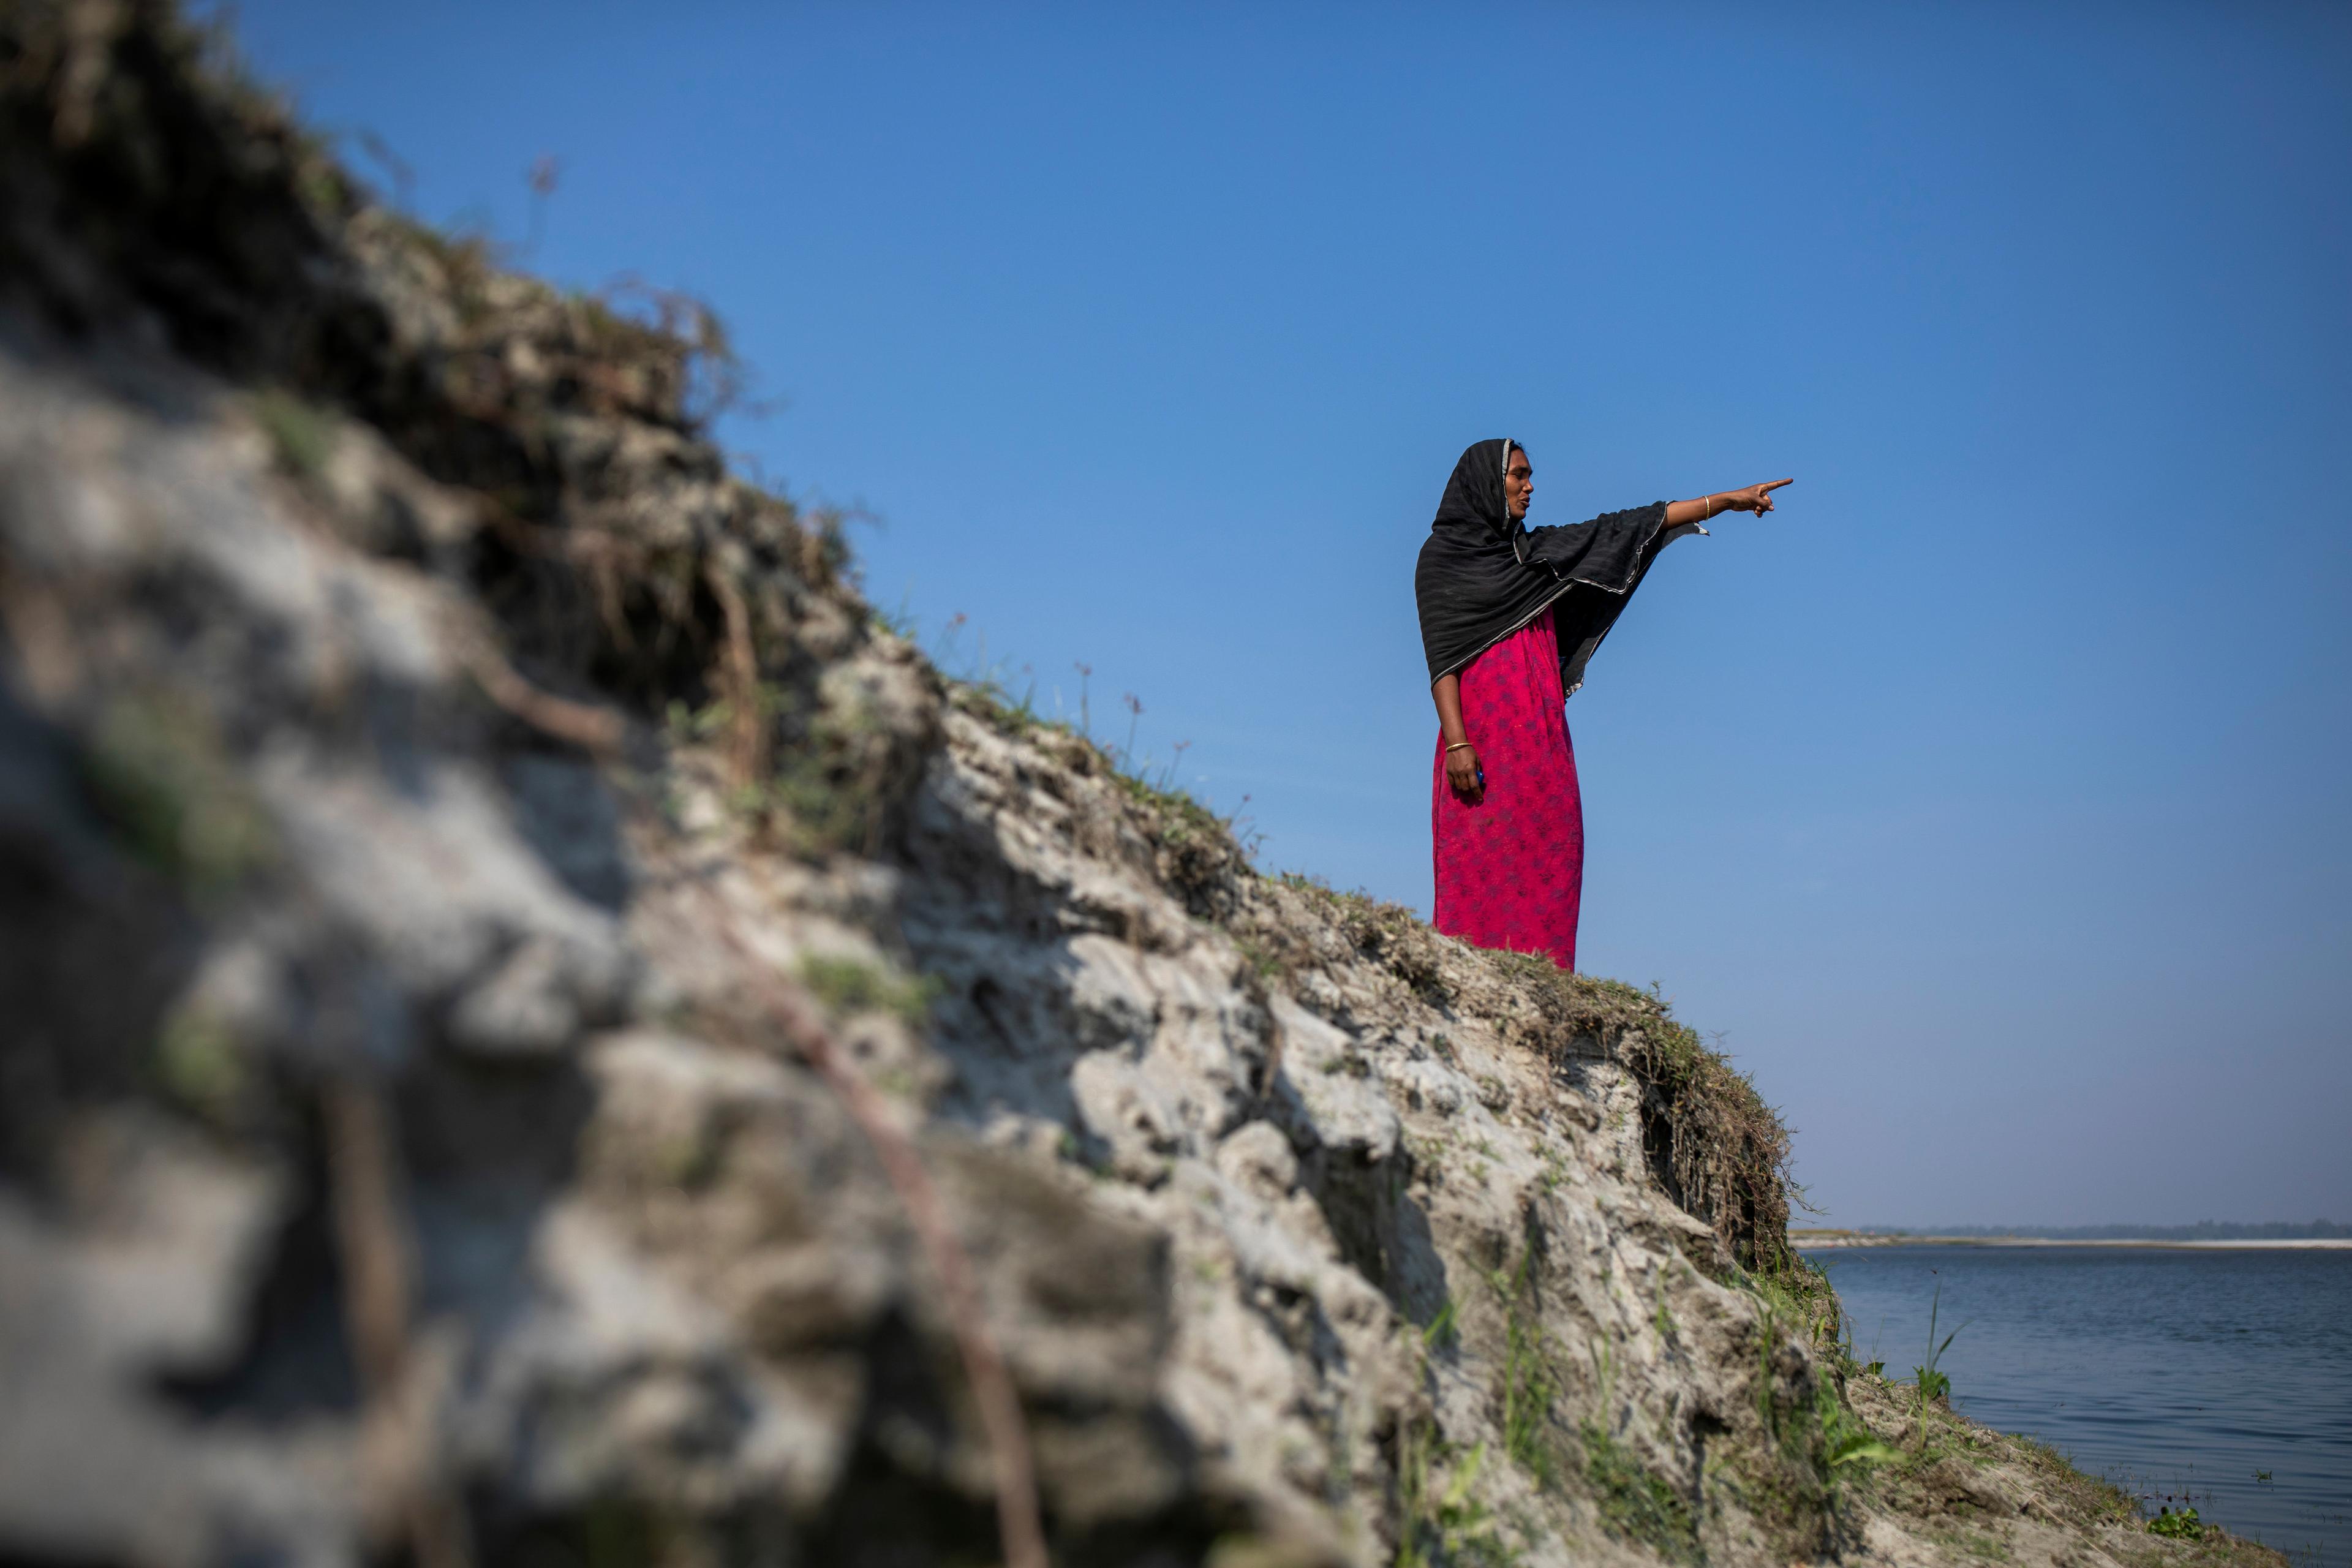 Una donna indica in lontananza con il braccio sinistro. Si guarda la mano. Tutto il suo corpo è visibile, è in piedi vicino a un fiume. Il cielo sullo sfondo è blu.